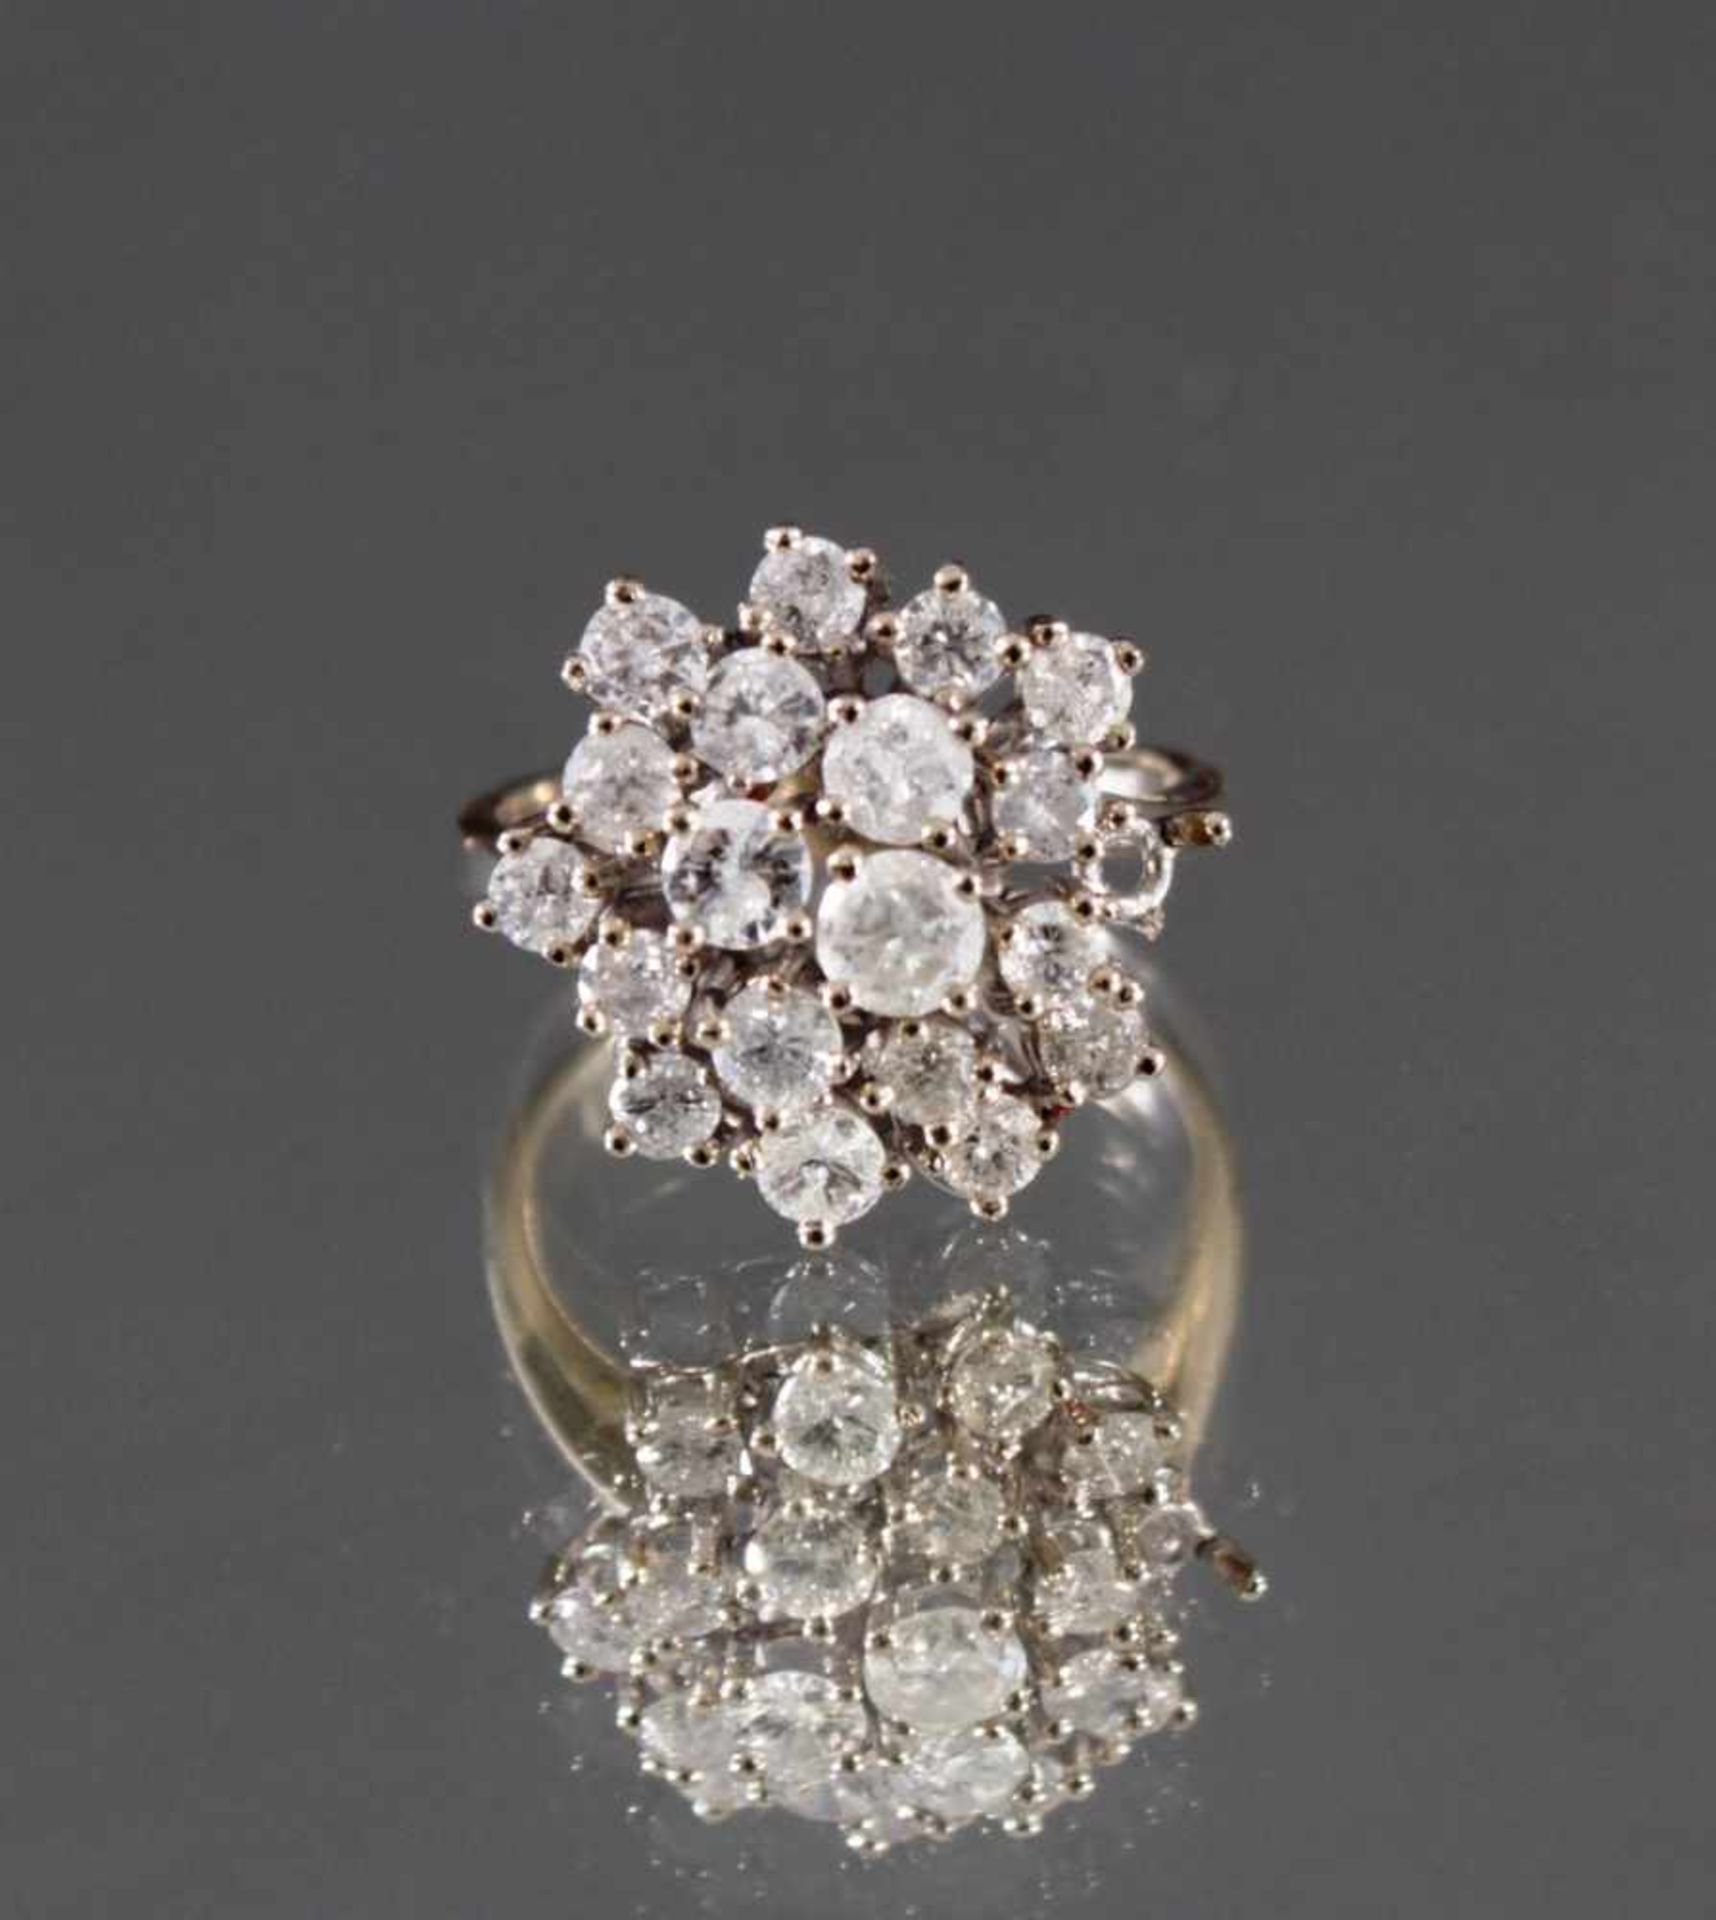 Damenring mit Diamanten 14 Karat WeißgoldBesetzt mit 19 Diamanten, 1 Stein fehlt, insg. ca. 1,4 - Bild 3 aus 6